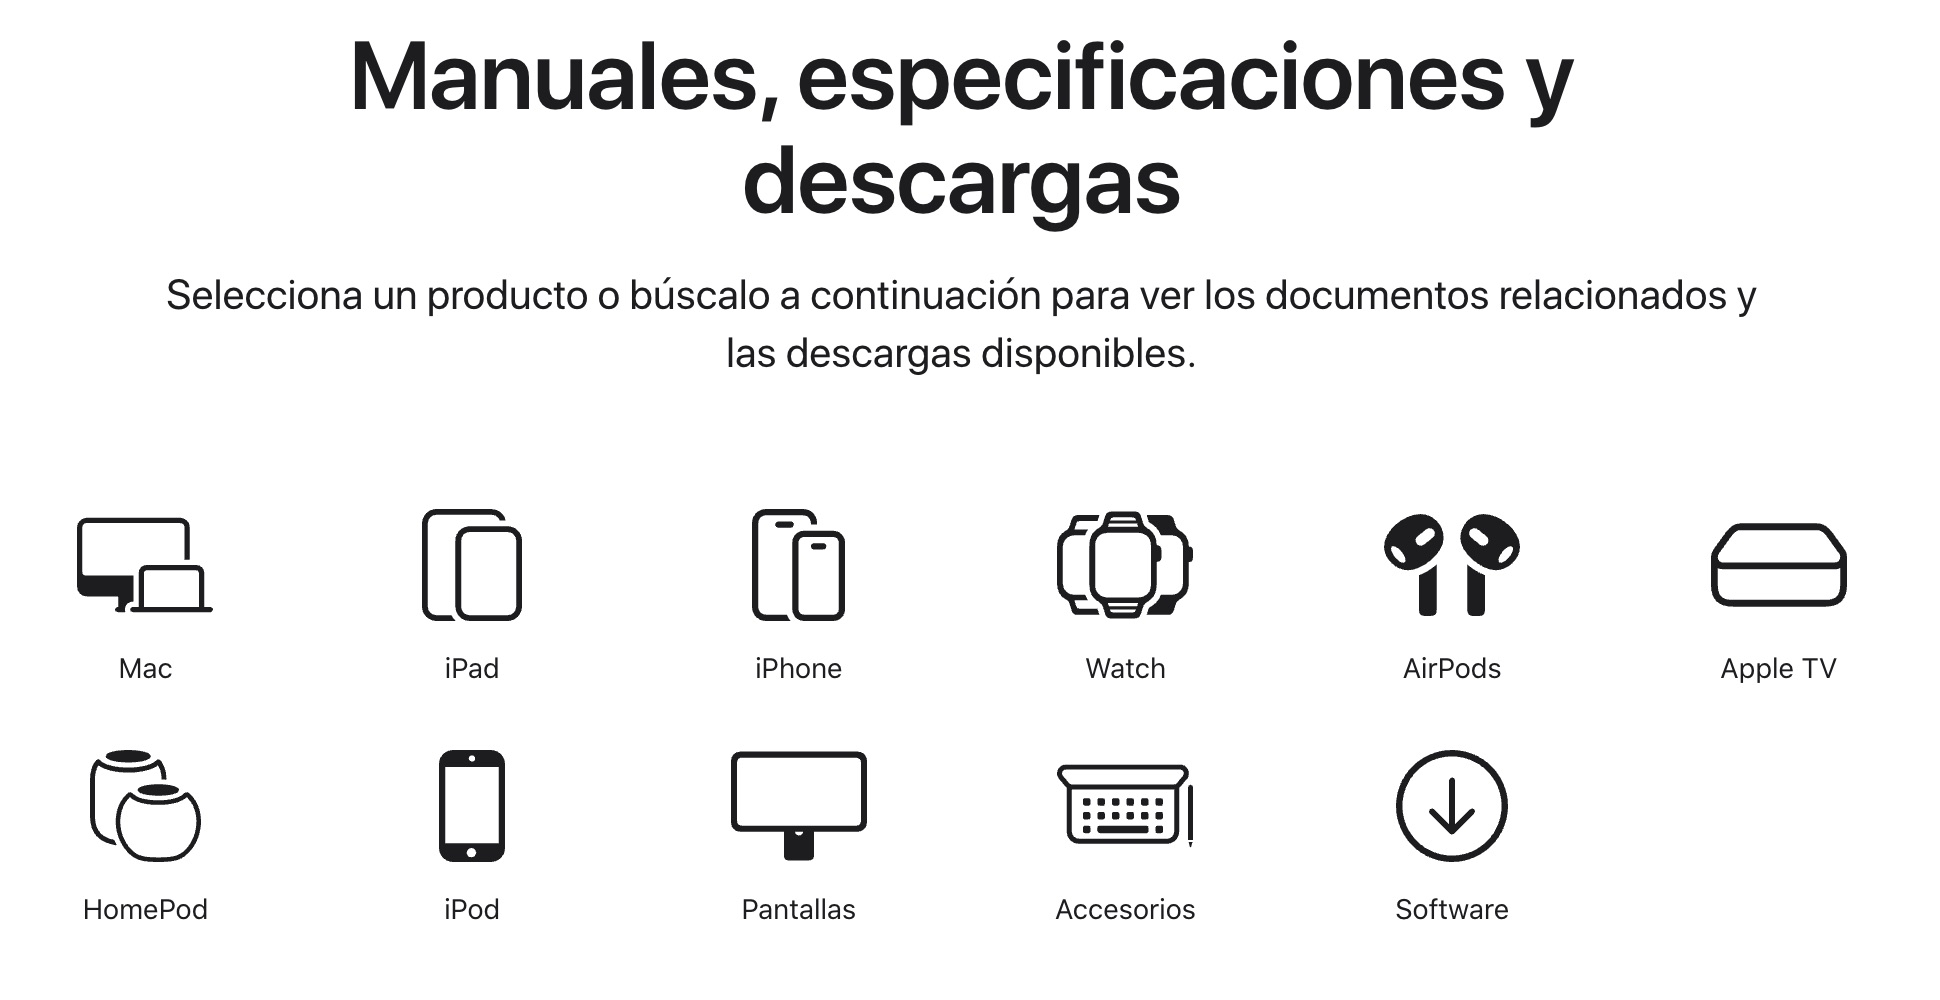 Manuales, especificaciones y descargas en la web de Apple